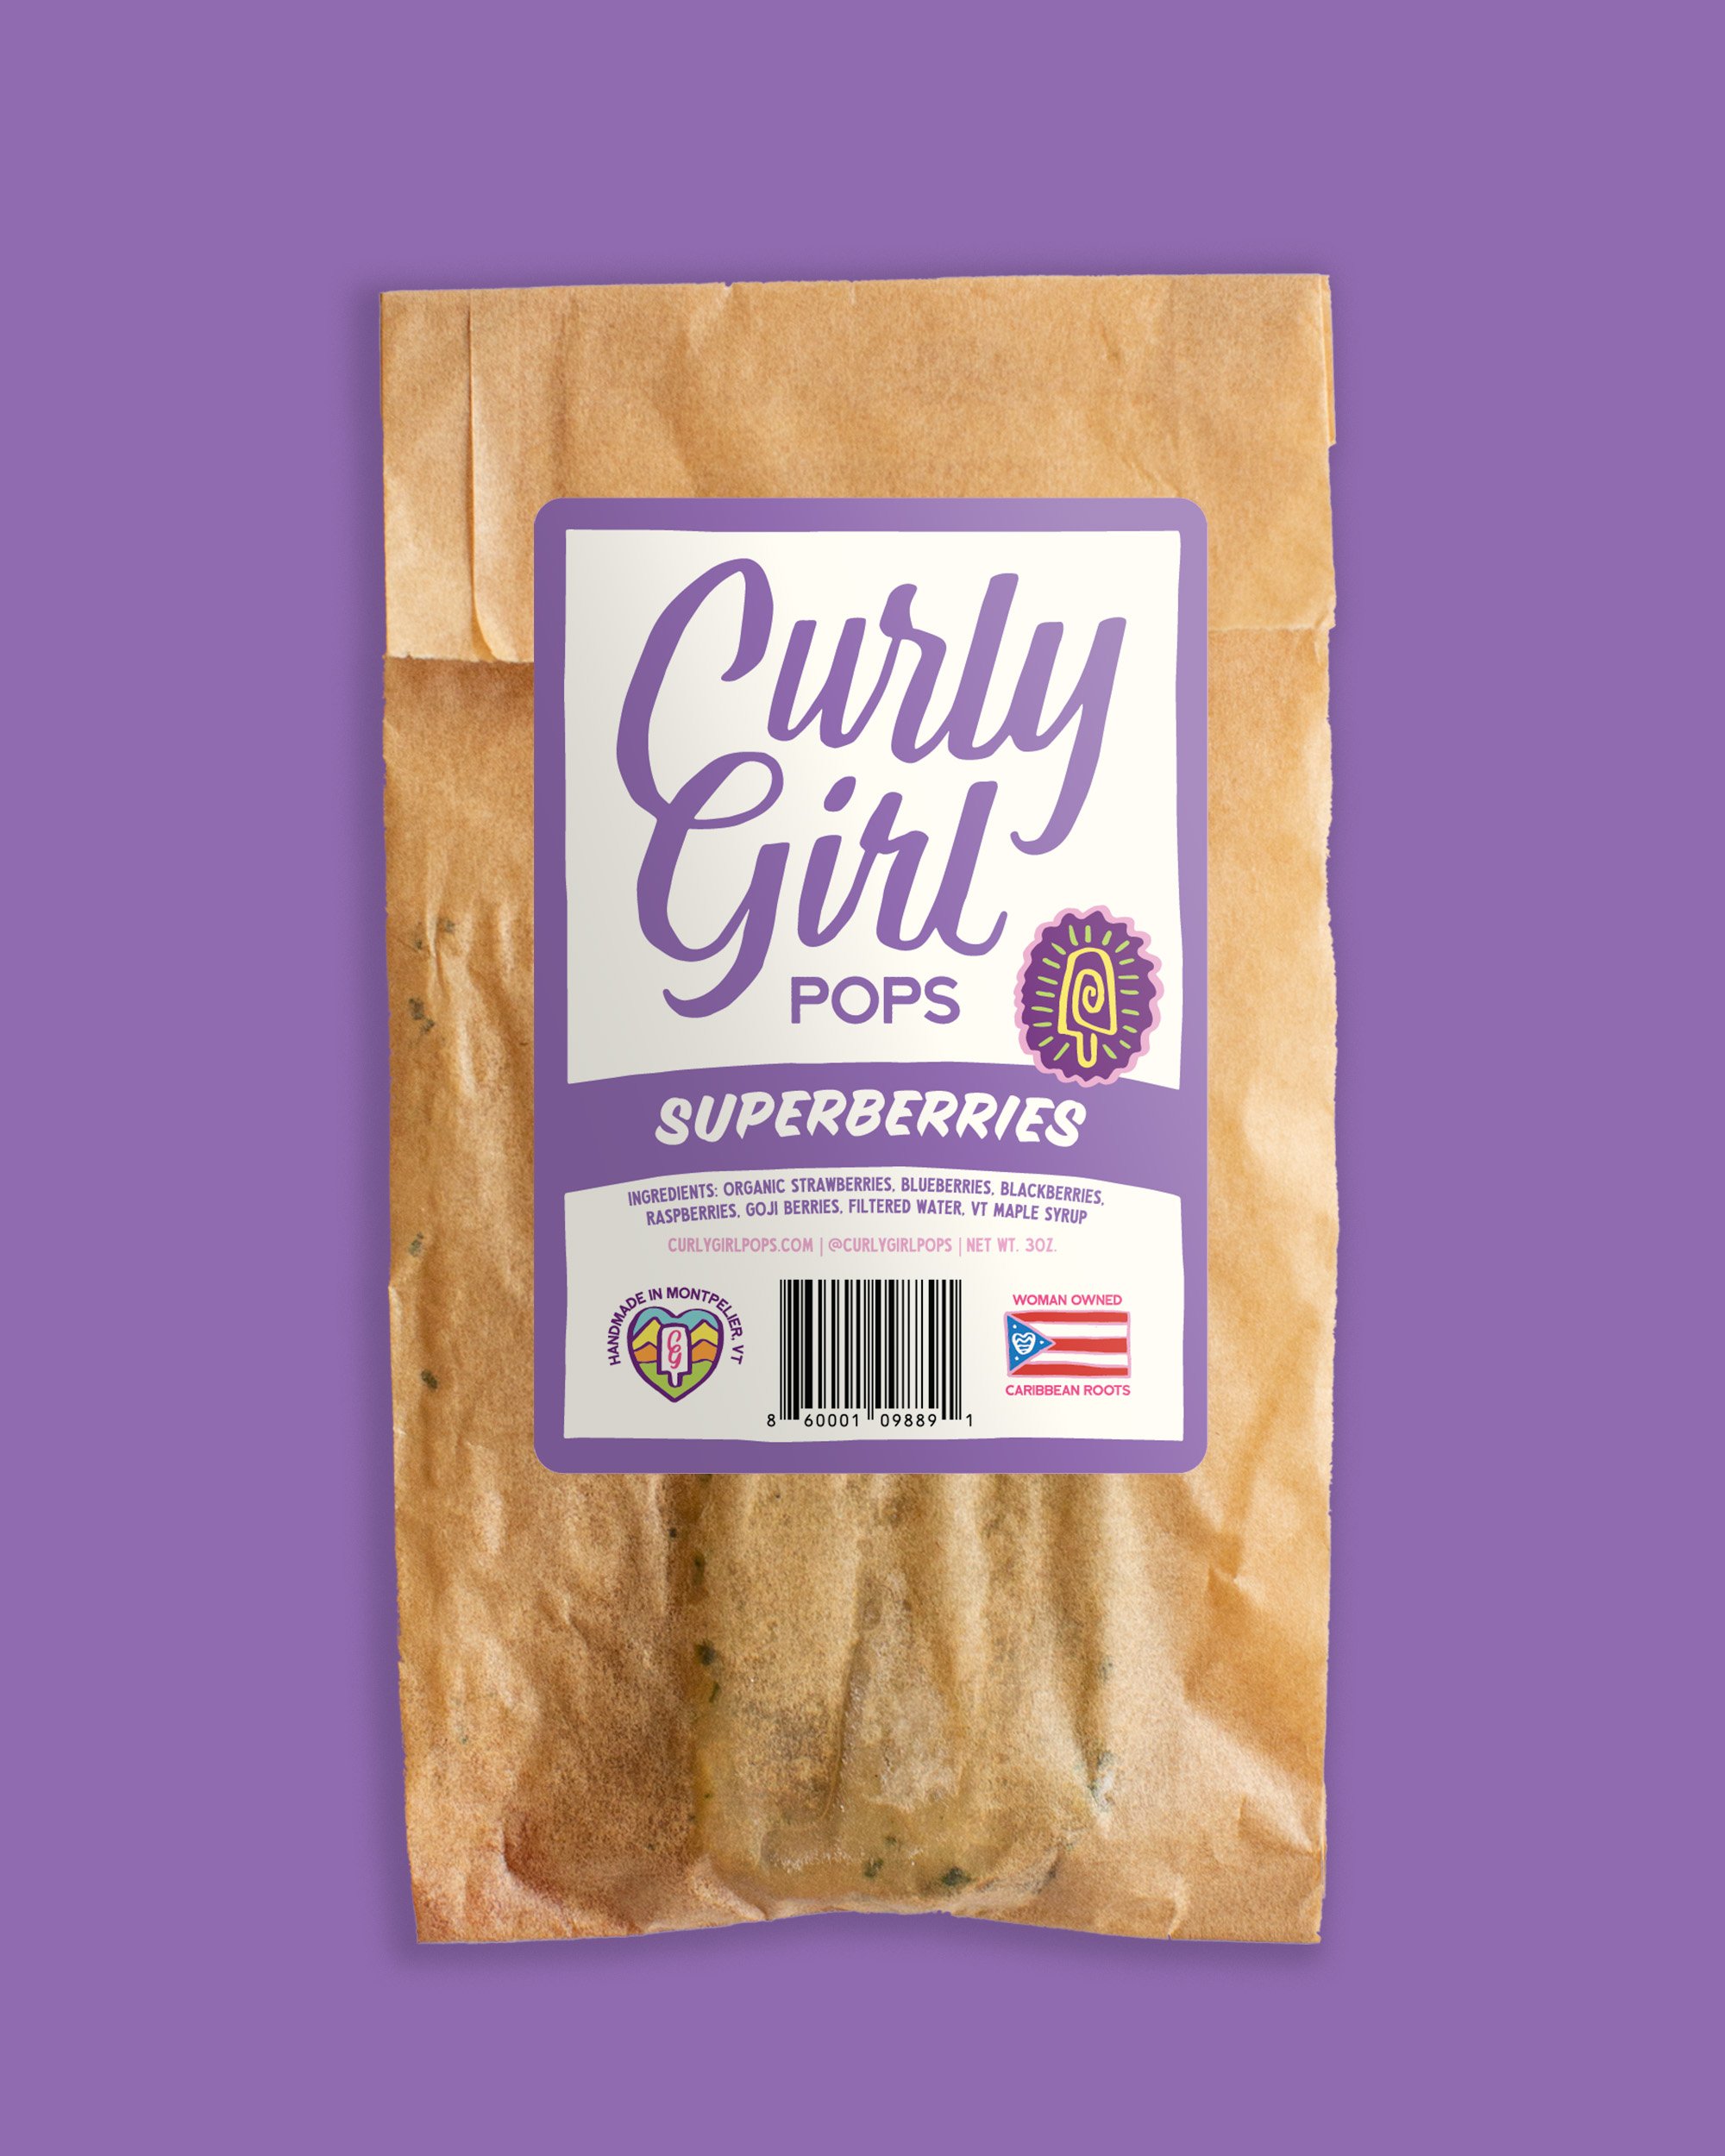 CurlyGirl-Packaging-Mockups-Superberries.jpg